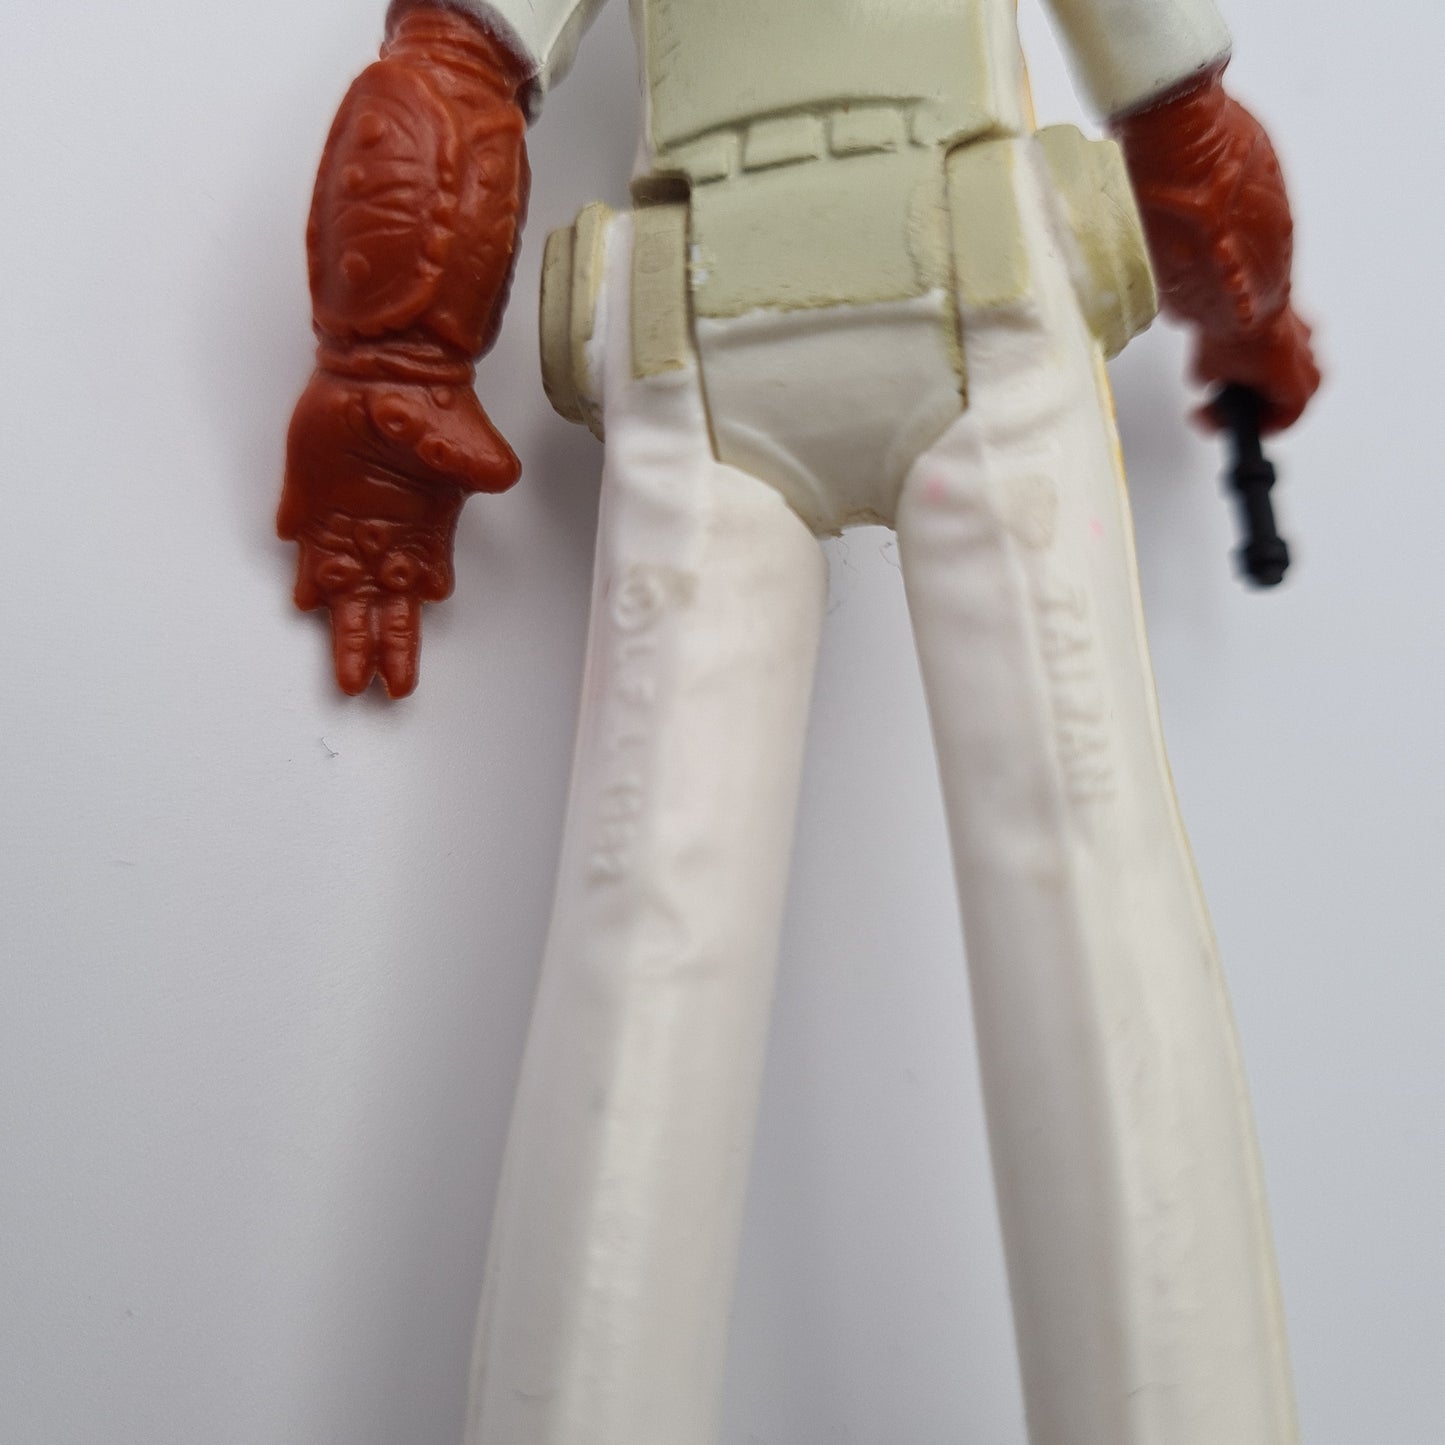 Admiral Ackbar Star Wars Action Figure 1982